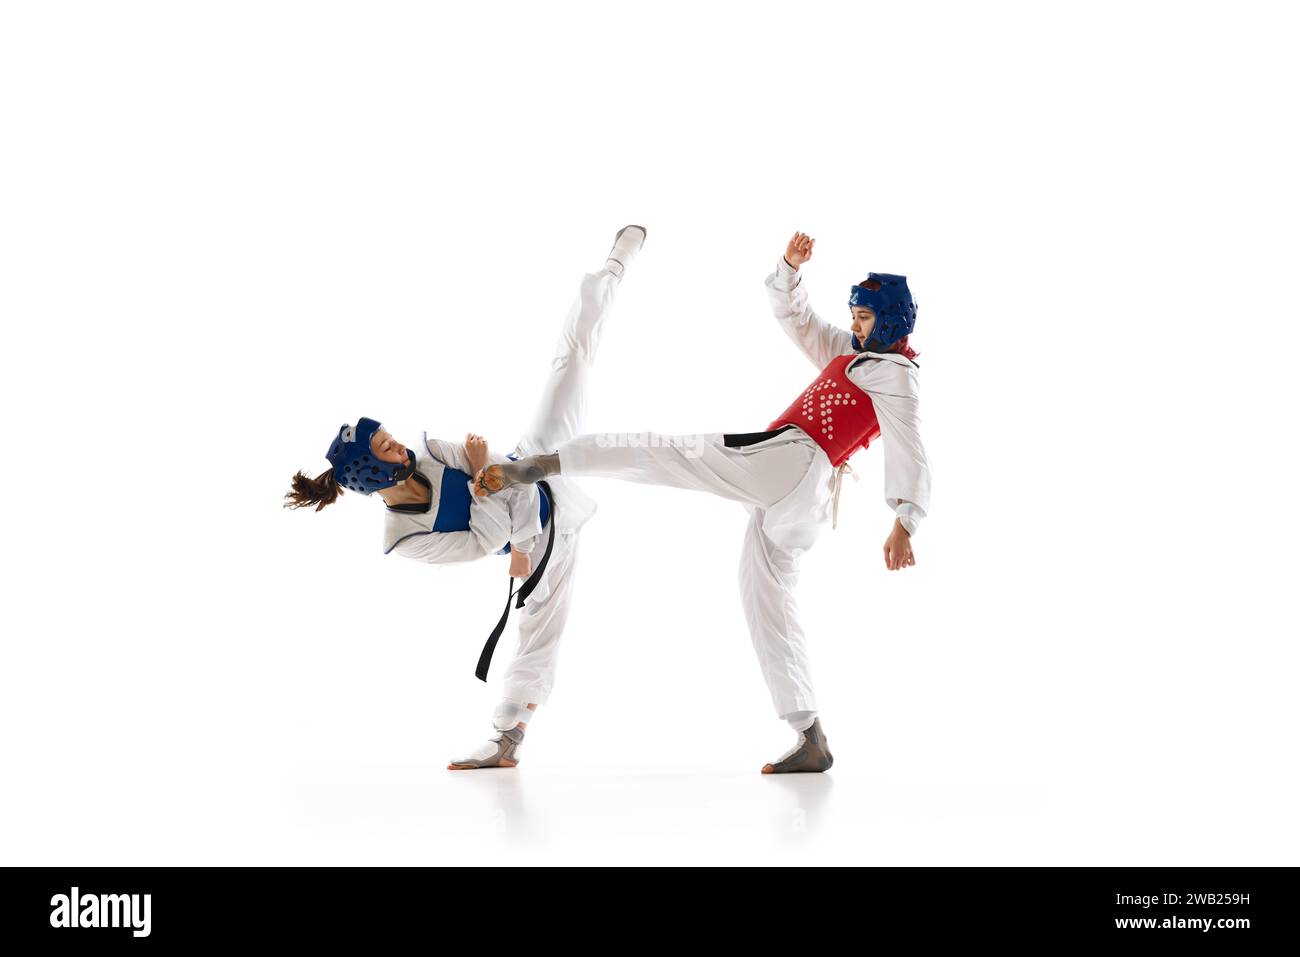 Coup de pied de jambe. Jeune fille, athlètes de taekwondo de compétition en dobok et entraînement de casque isolé sur fond blanc Banque D'Images